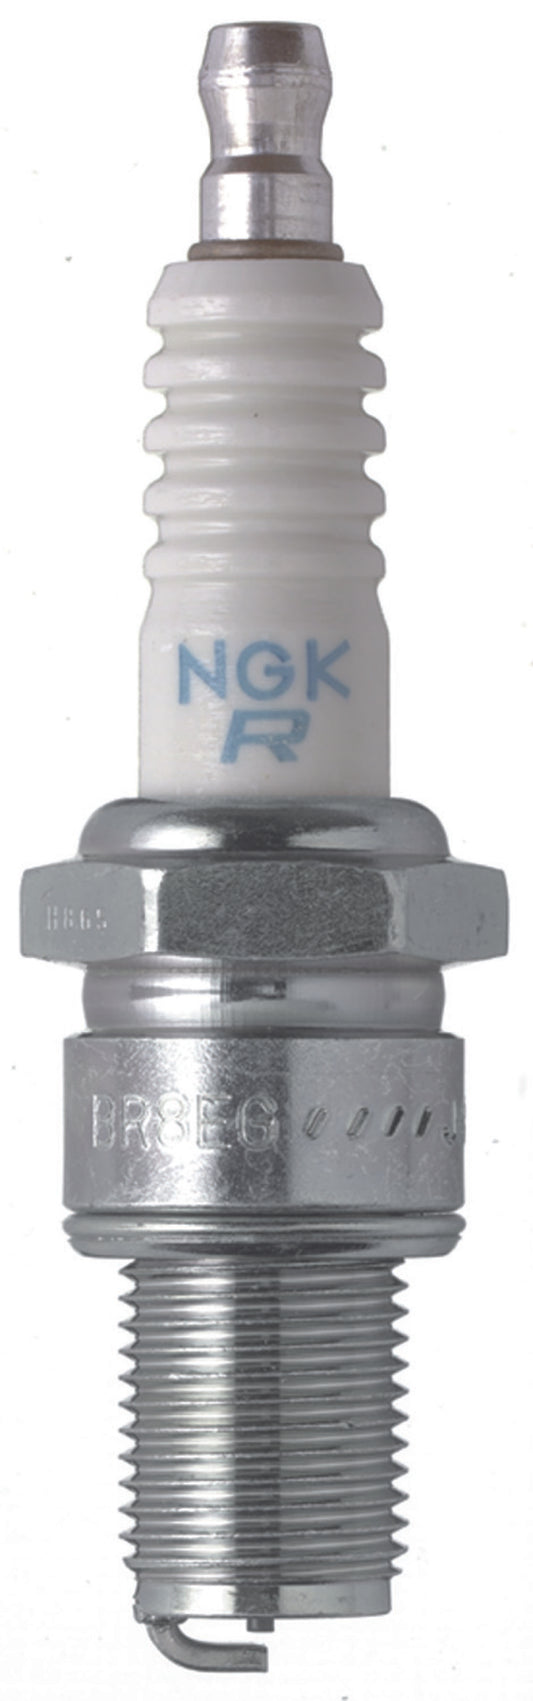 NGK Racing Spark Plug Box of 4 (BR8EG)